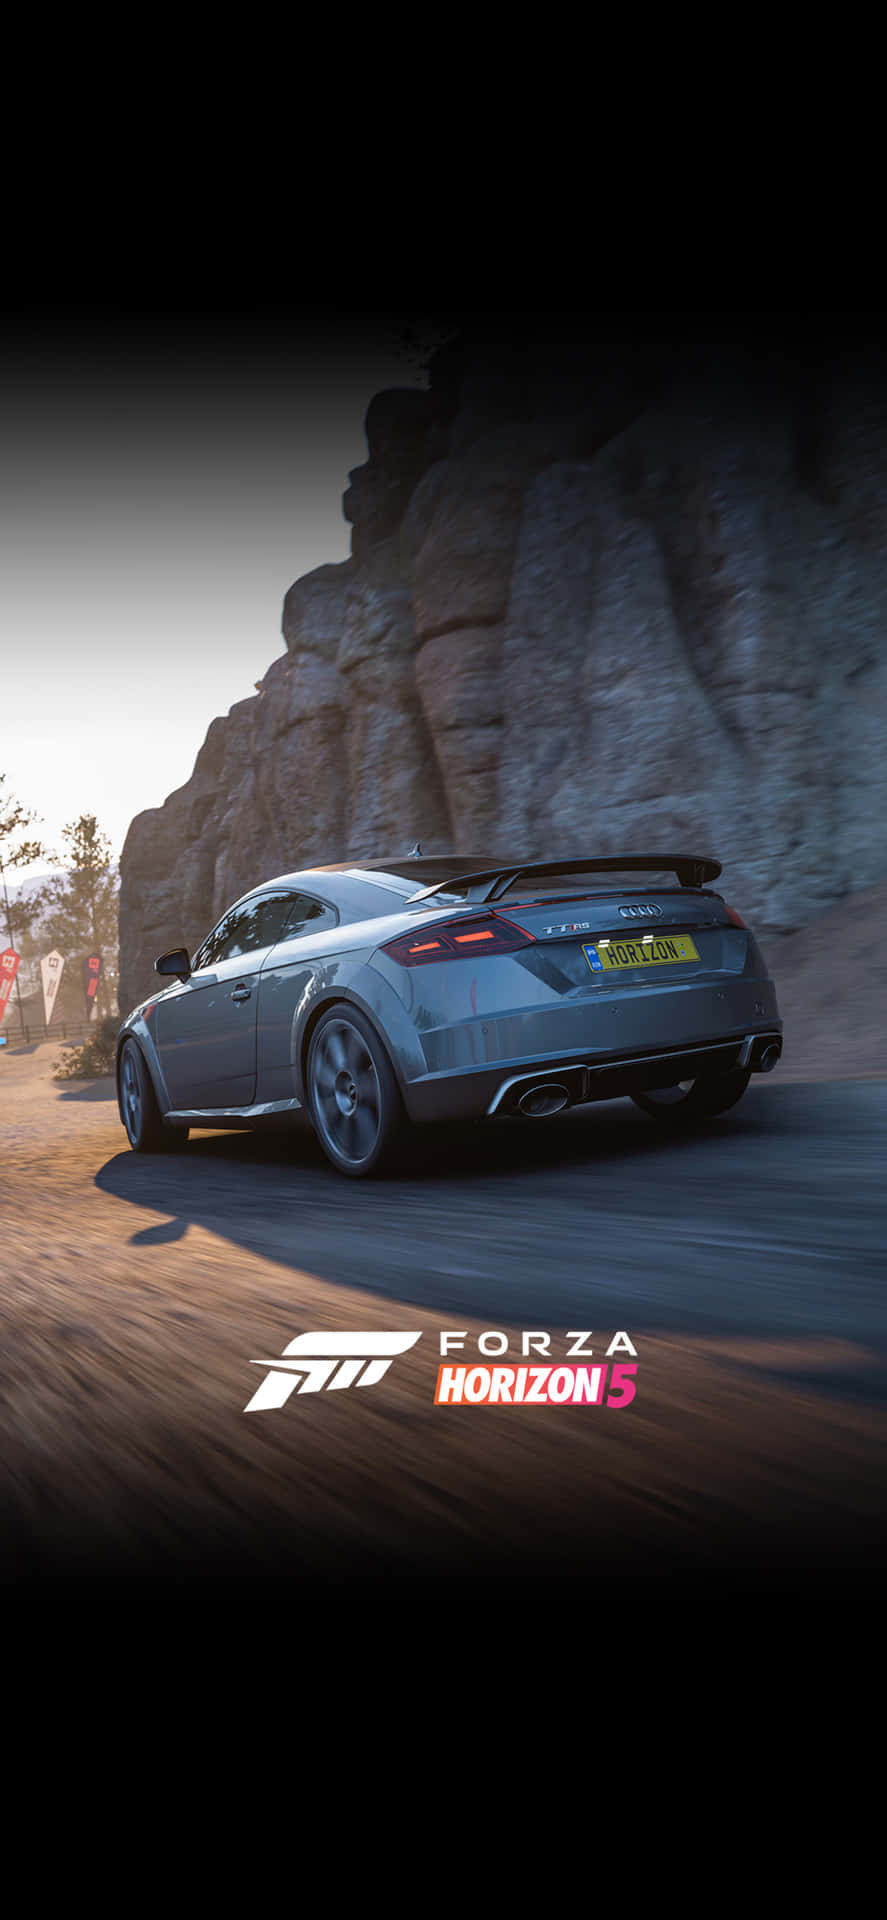 Auditt Iphone X Bakgrundsbild För Forza Motorsport 7.